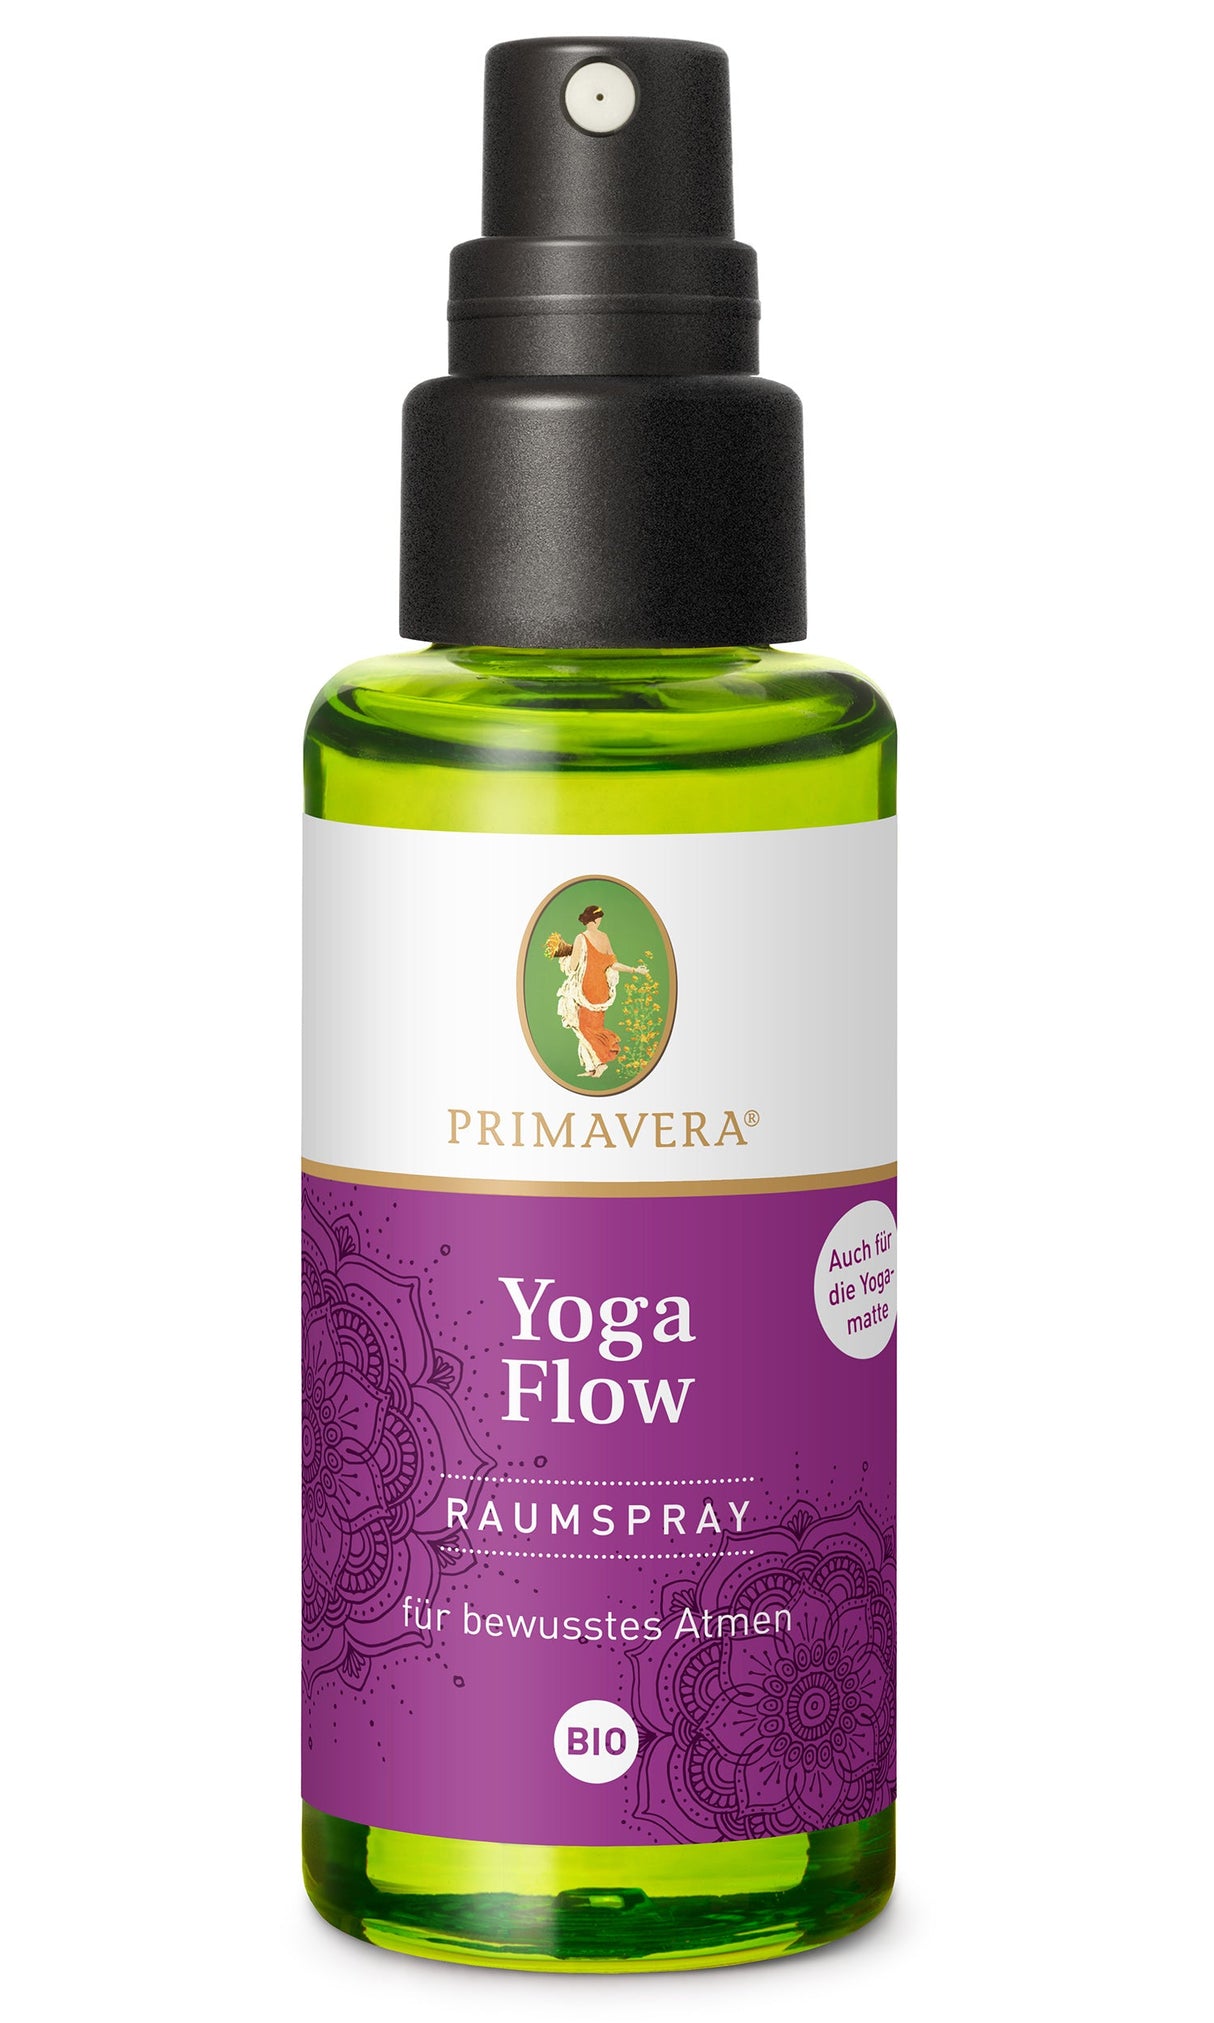 Bio Yogaflow Raumspray, 50 ml